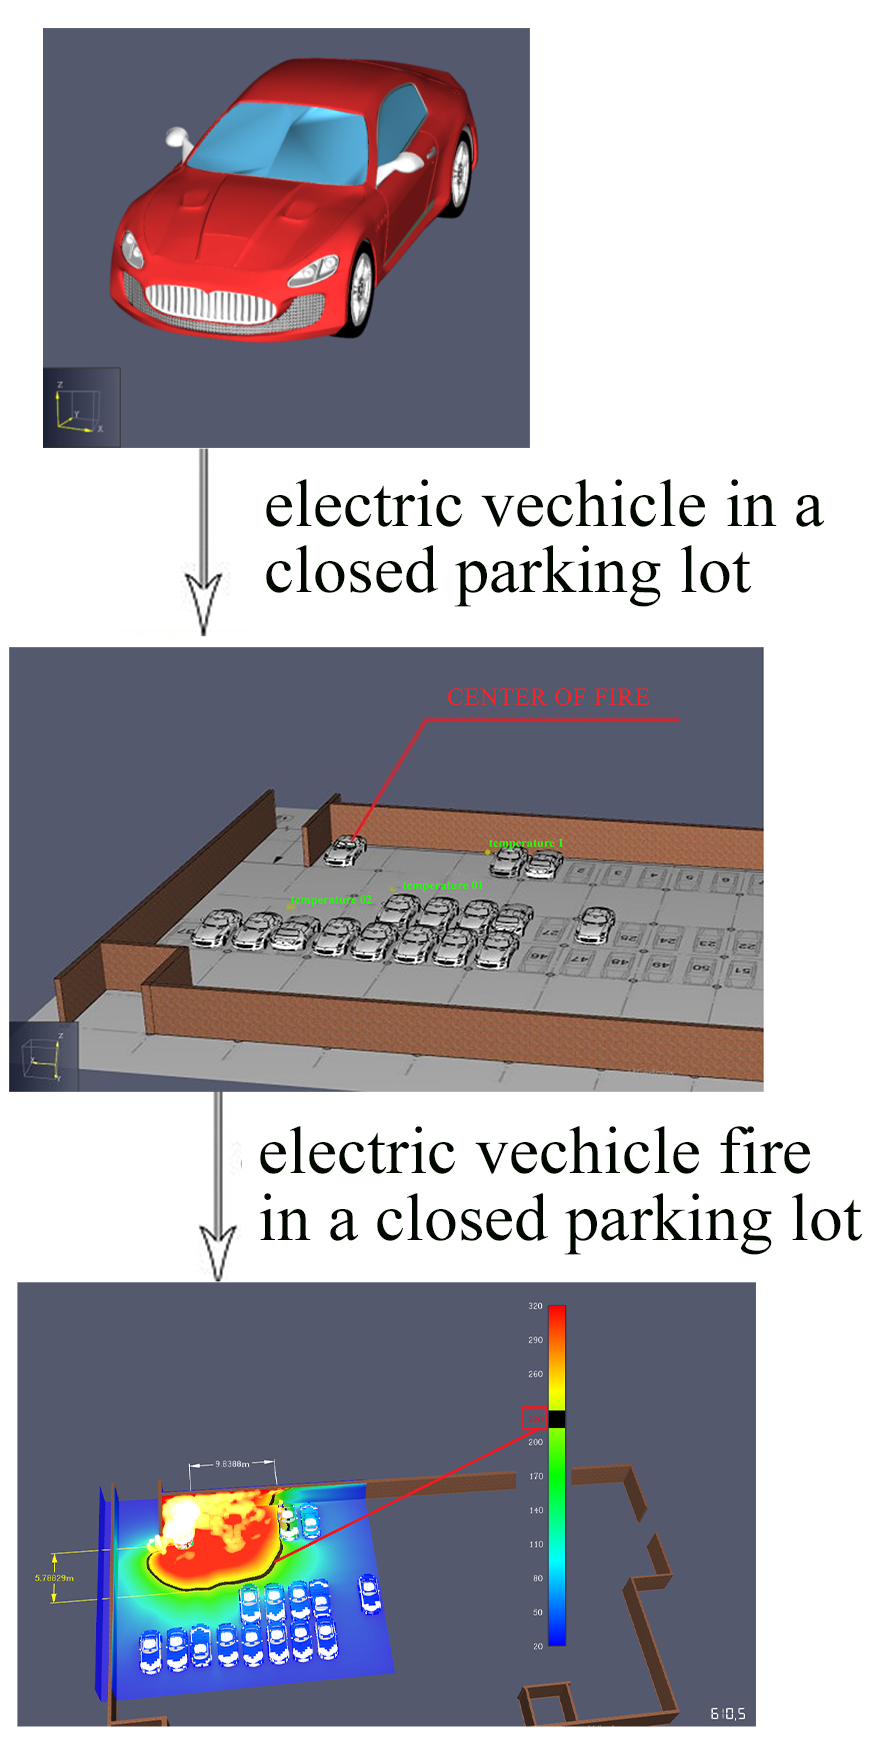 Визначення безпечних протипожежних відстаней під час пожежі Tesla model s на закритому паркінгу